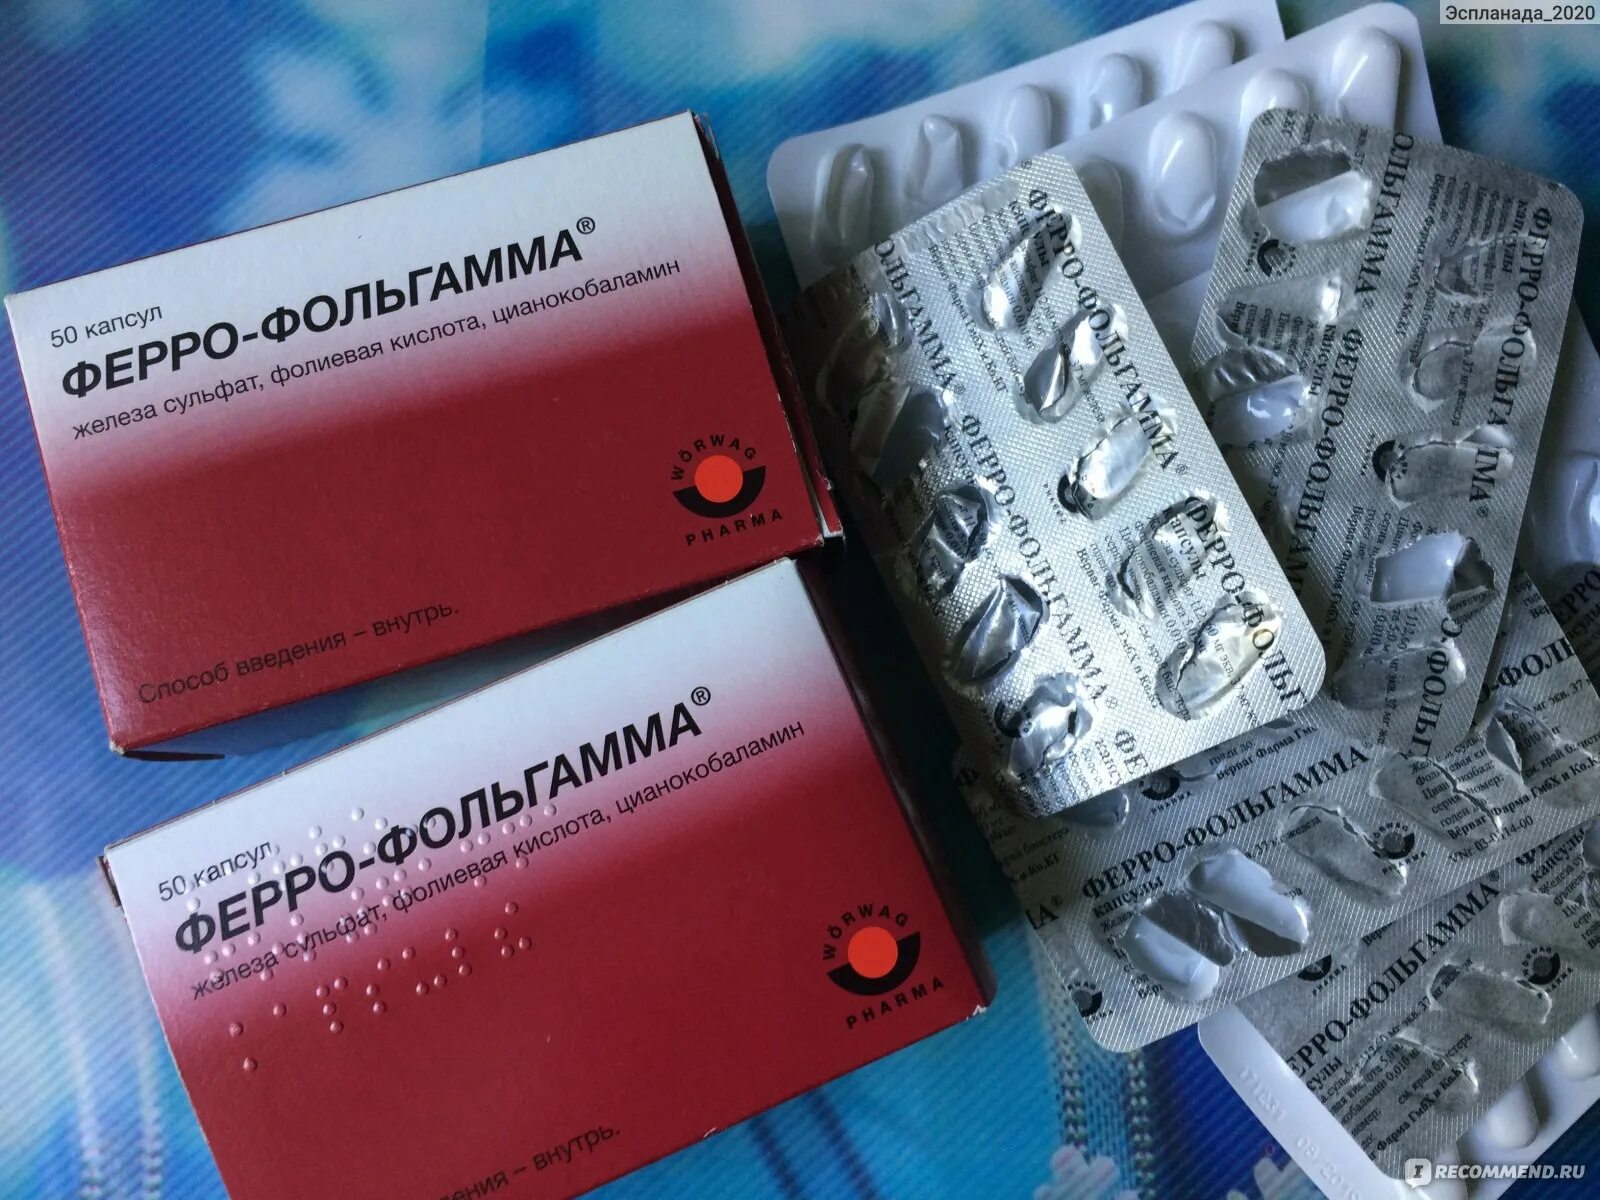 Эффективный препарат для гемоглобина. Ферро фольгамма таблетки. Таблетки для повышения гемоглобина. Повысить гемоглобин лекарствами. Витамины для поднятия гемоглобина.